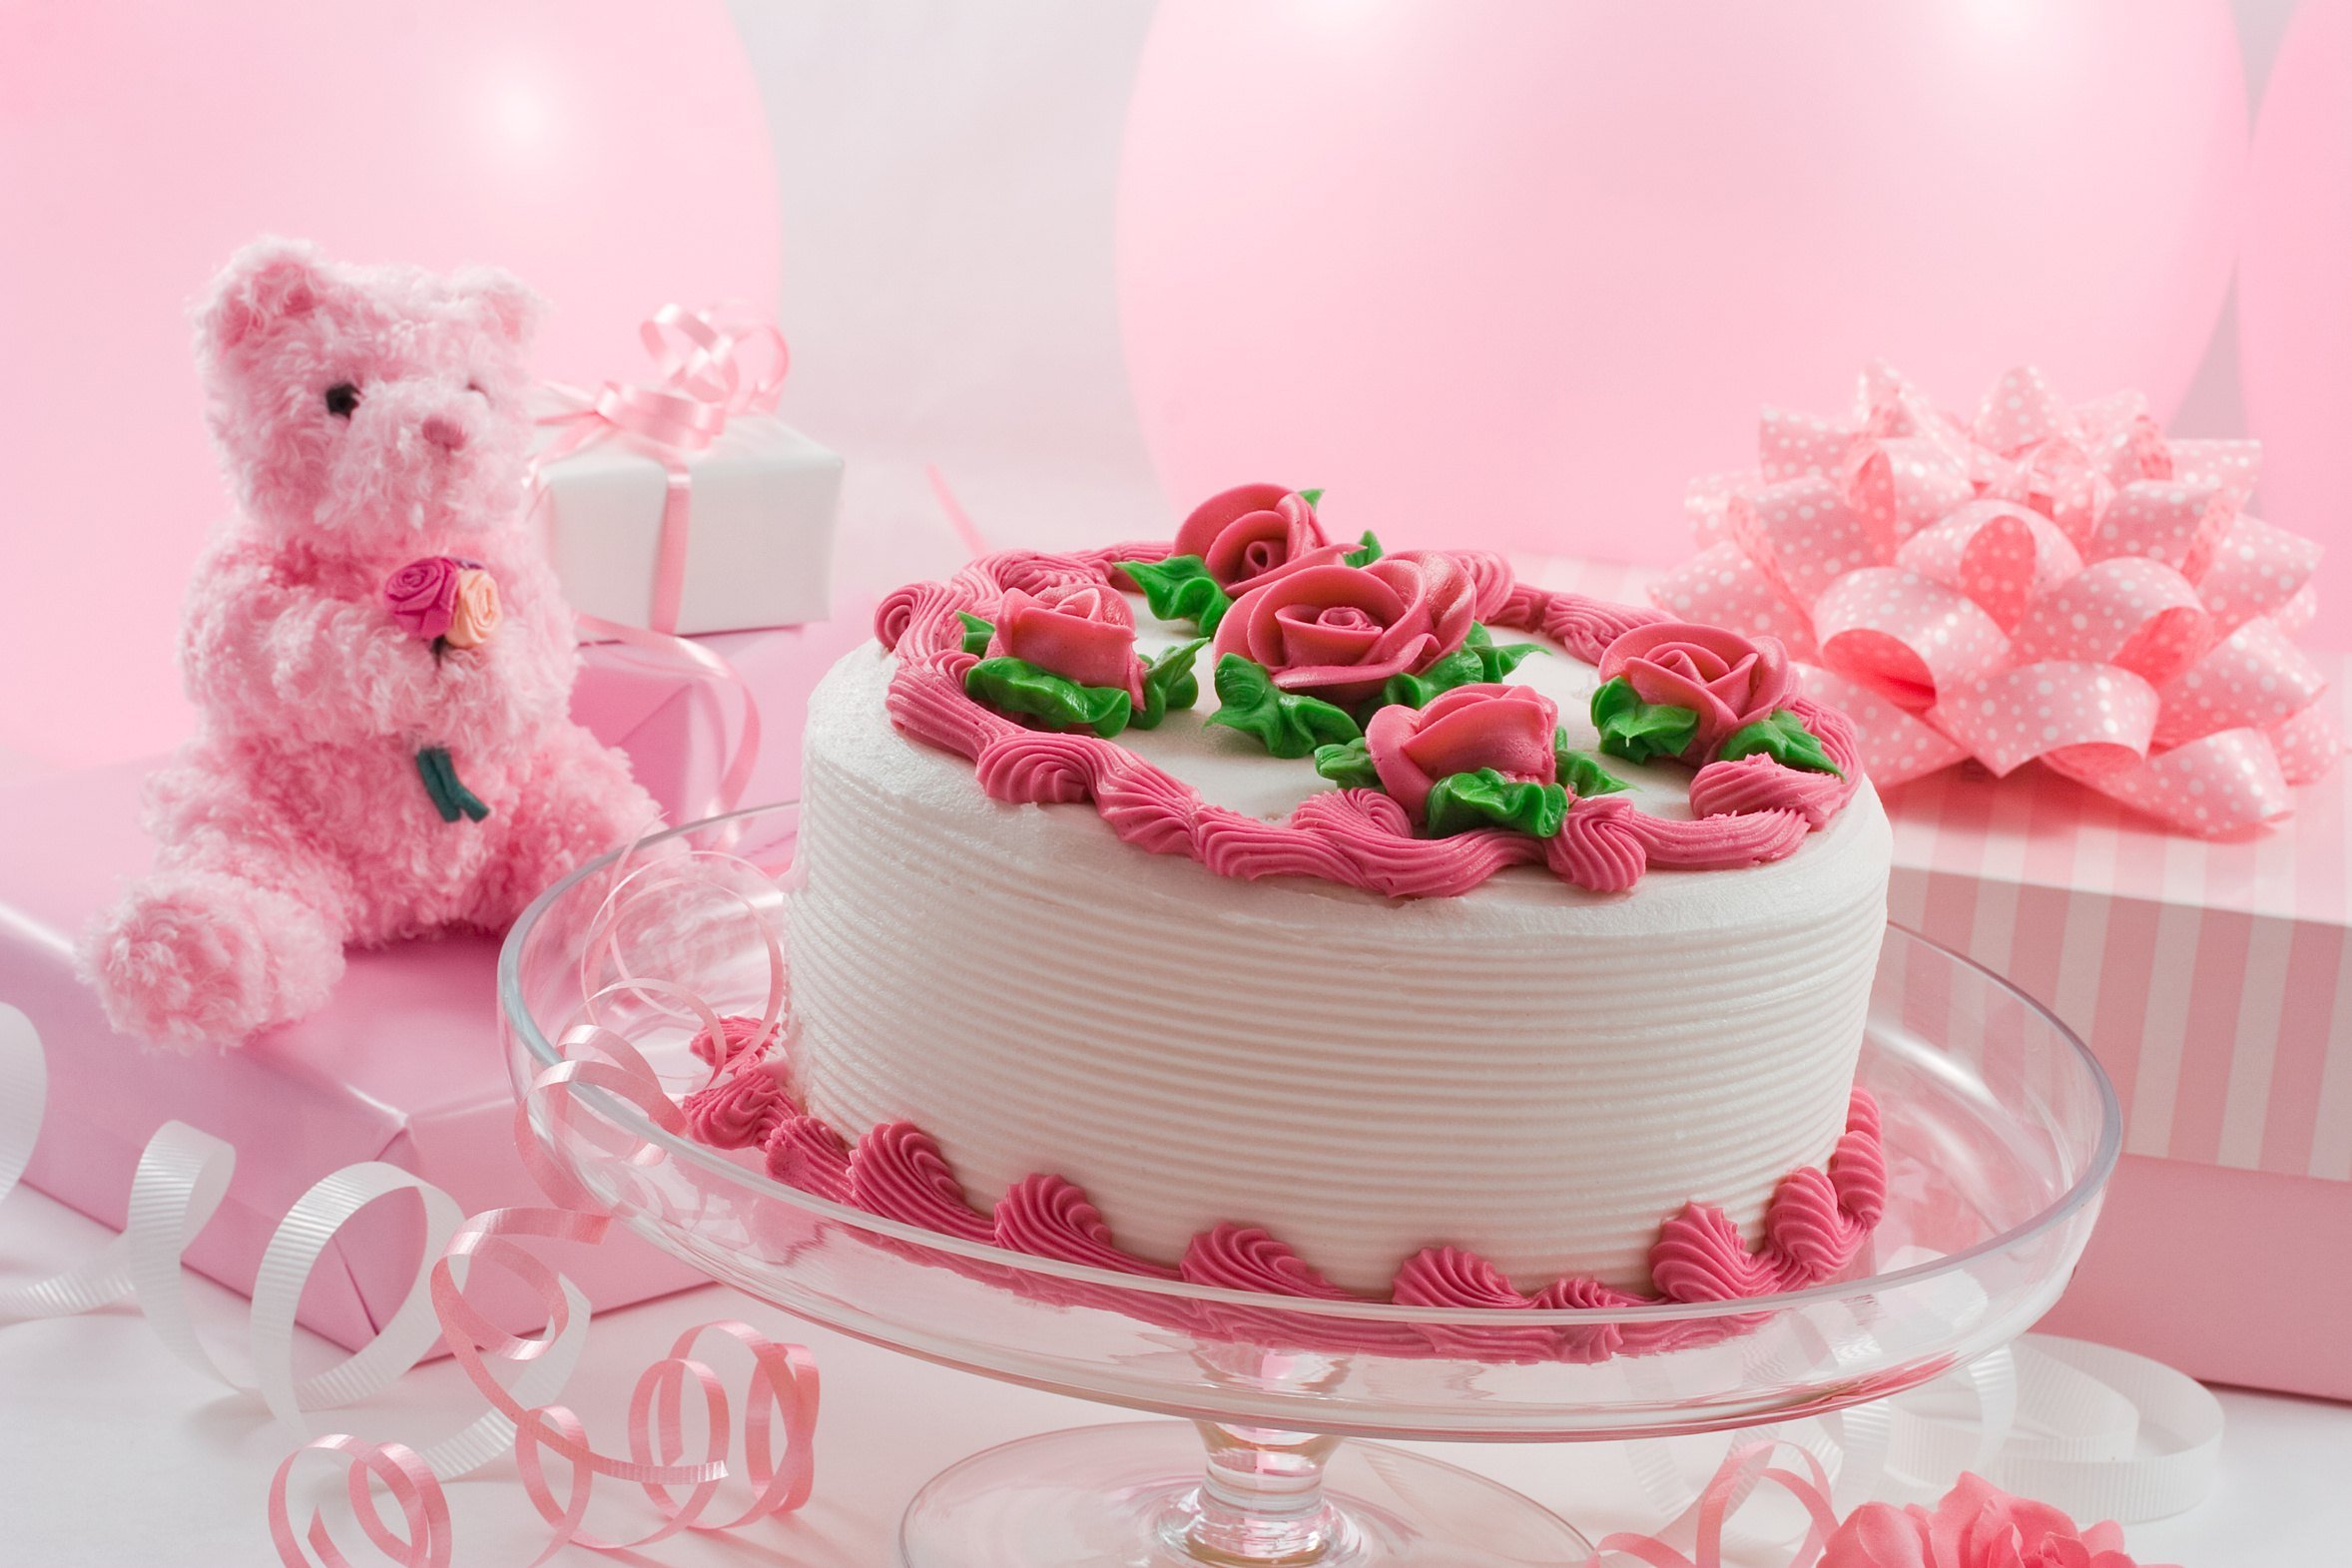 Найти красивые картинки с днем рожденья. Торт с днем рождения!. Открытка с днём рождения тортик. С днем рождения торт и цветы. Торт с днём рождения картинки.